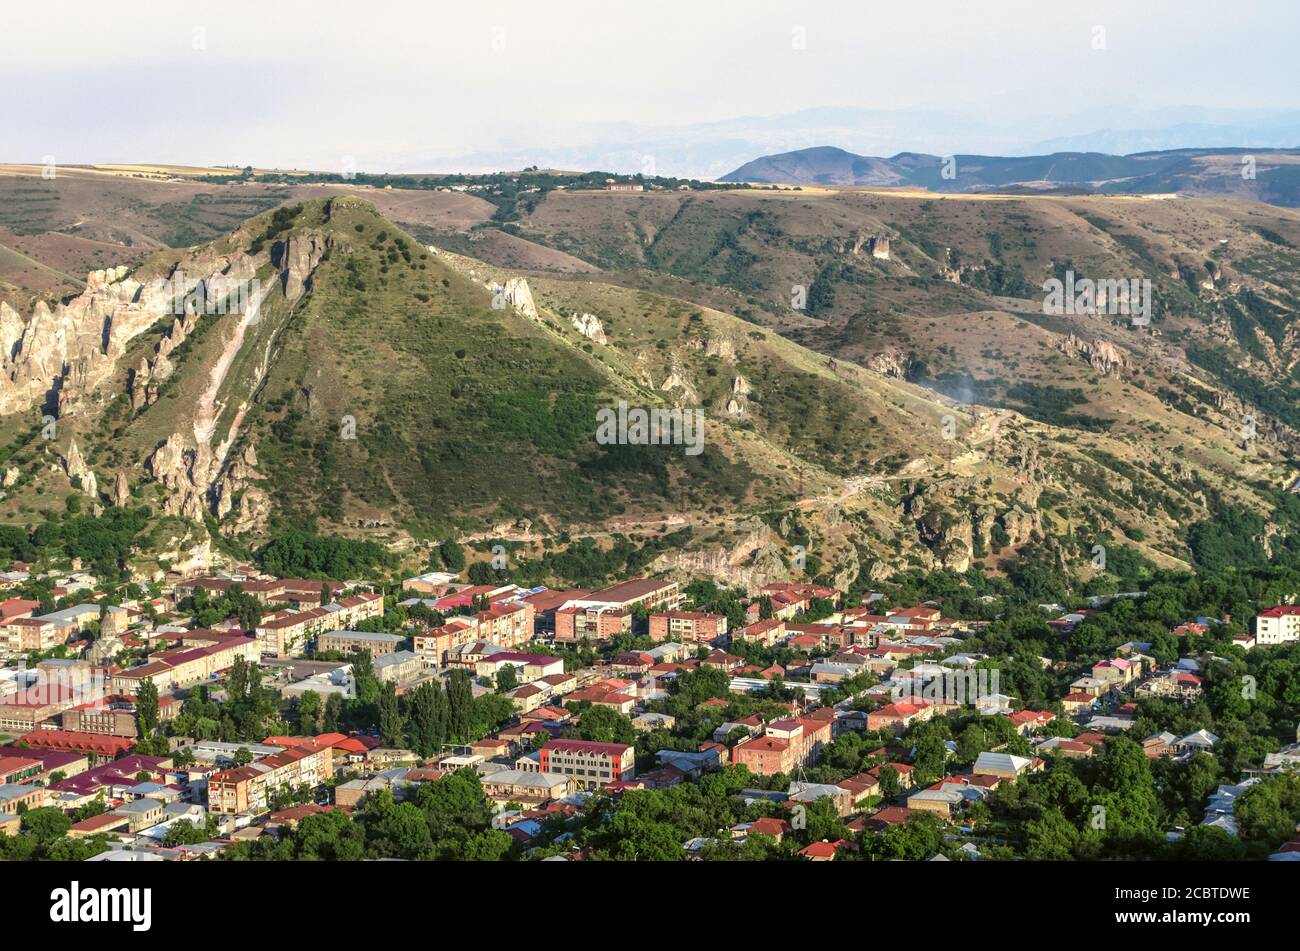 Armenien, Goris Stadt im Mittelalter gegründet und befindet sich in einer Berghöhle zwischen Felsen mit Höhlen bei Sonnenuntergang Stockfoto